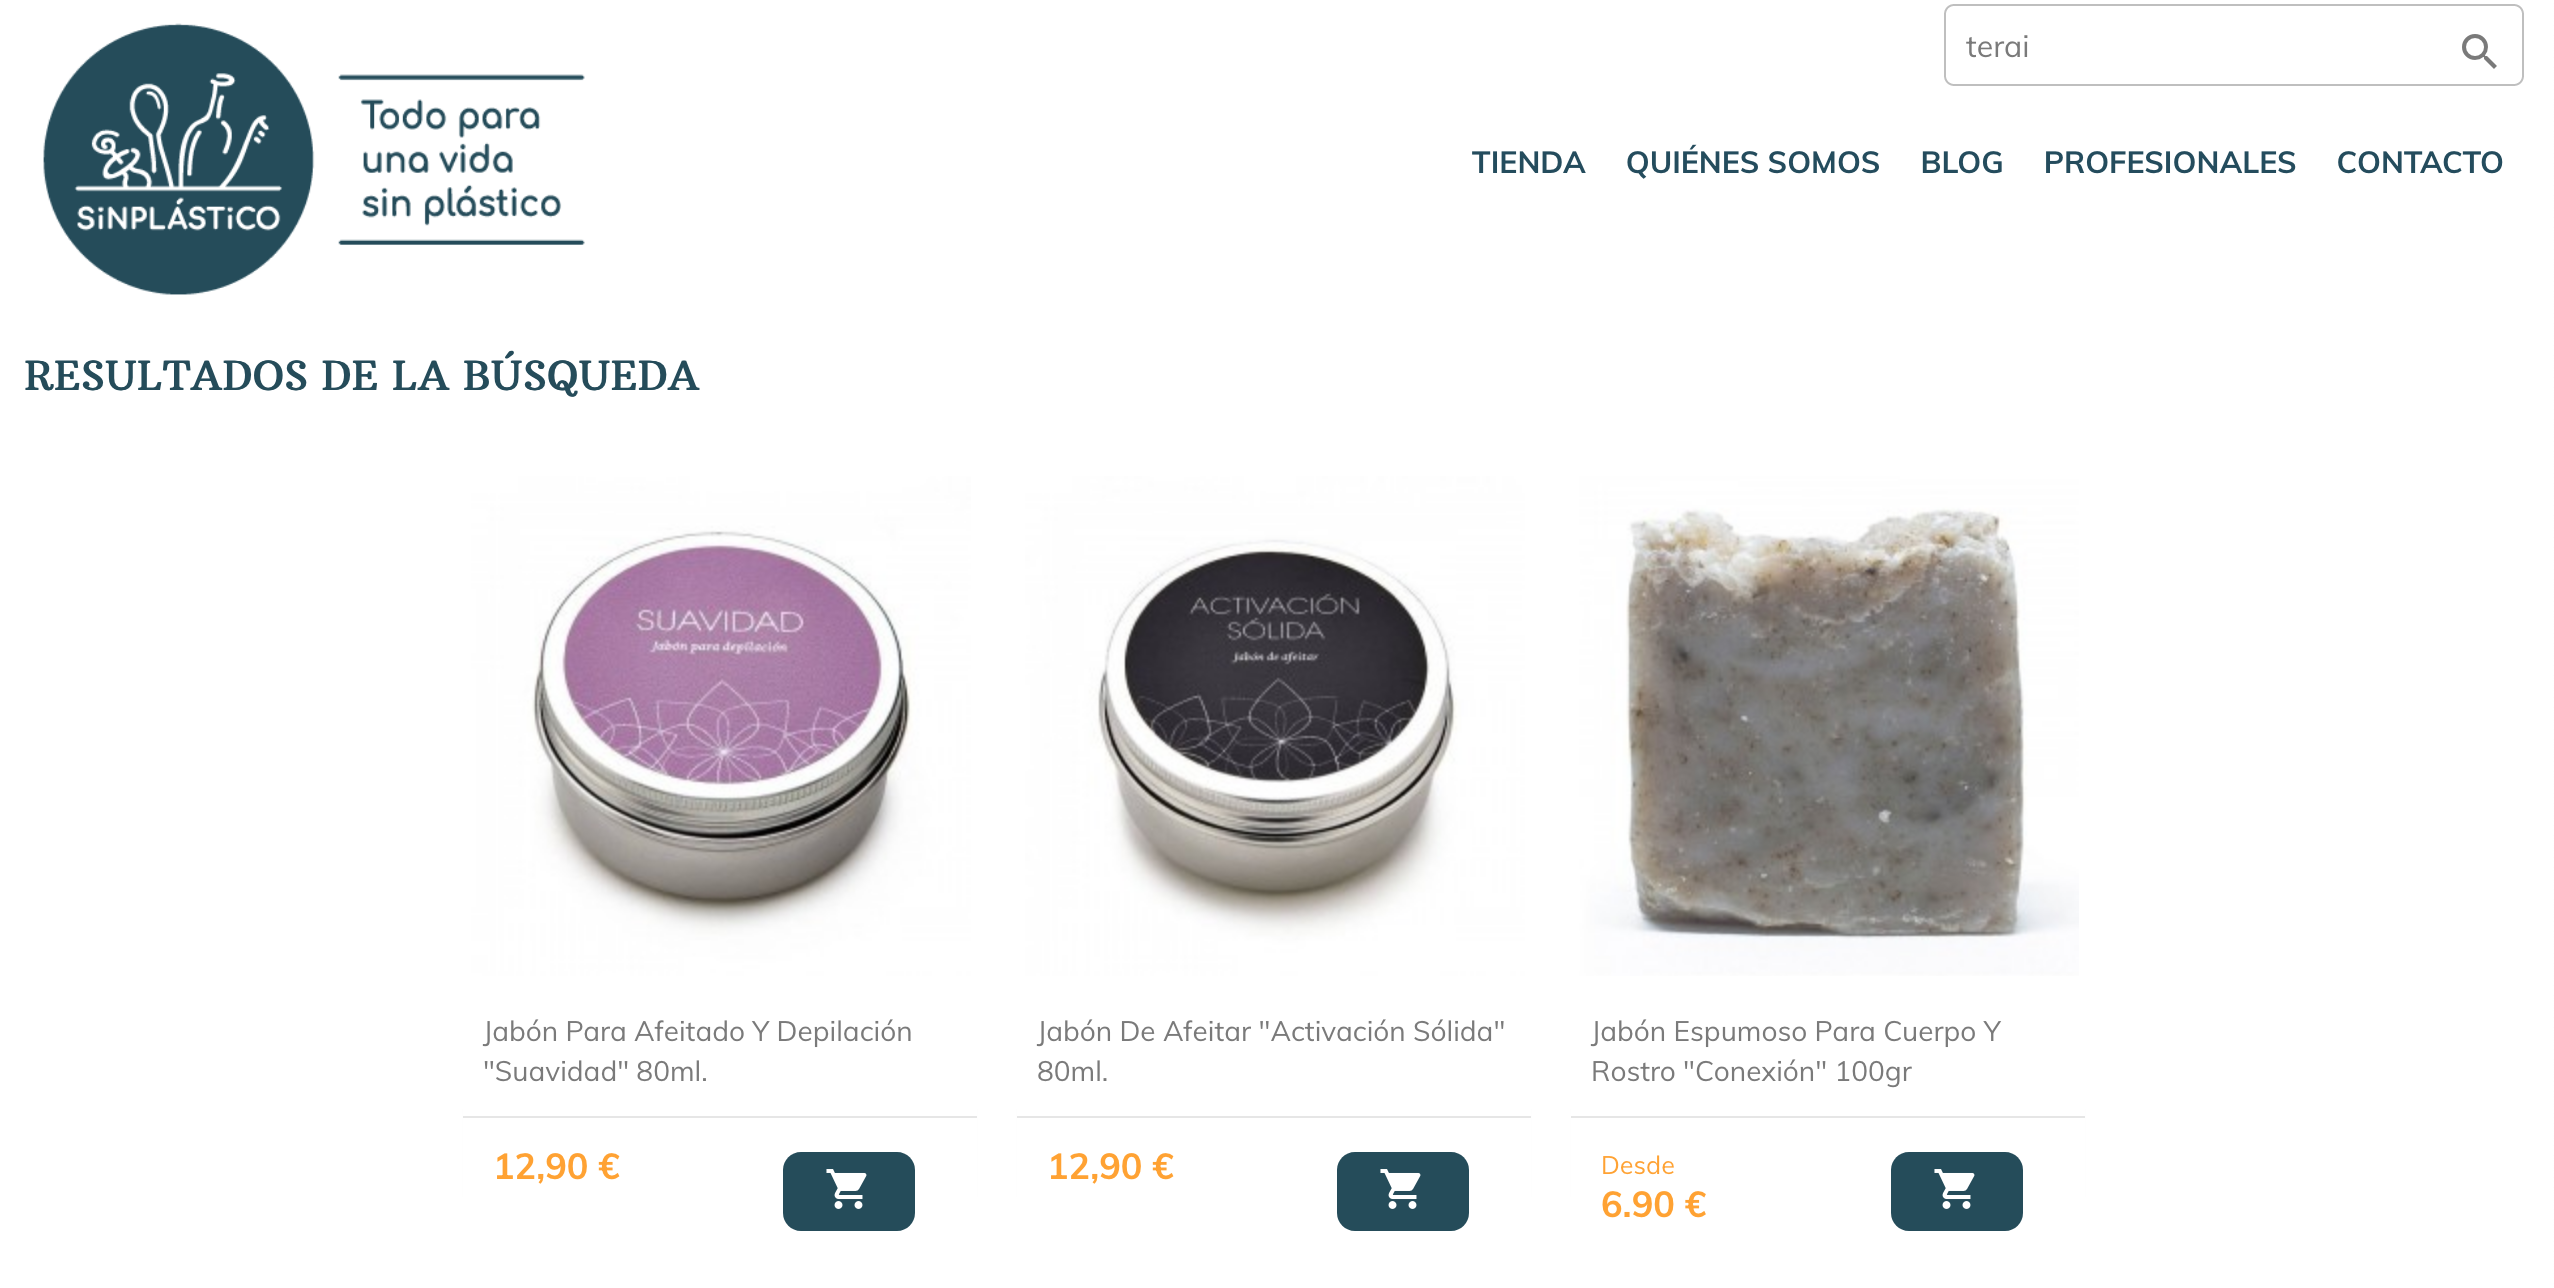 terai cosmética natural es un producto artesanal y está de venta en tienda online y tienda física en Bilbao